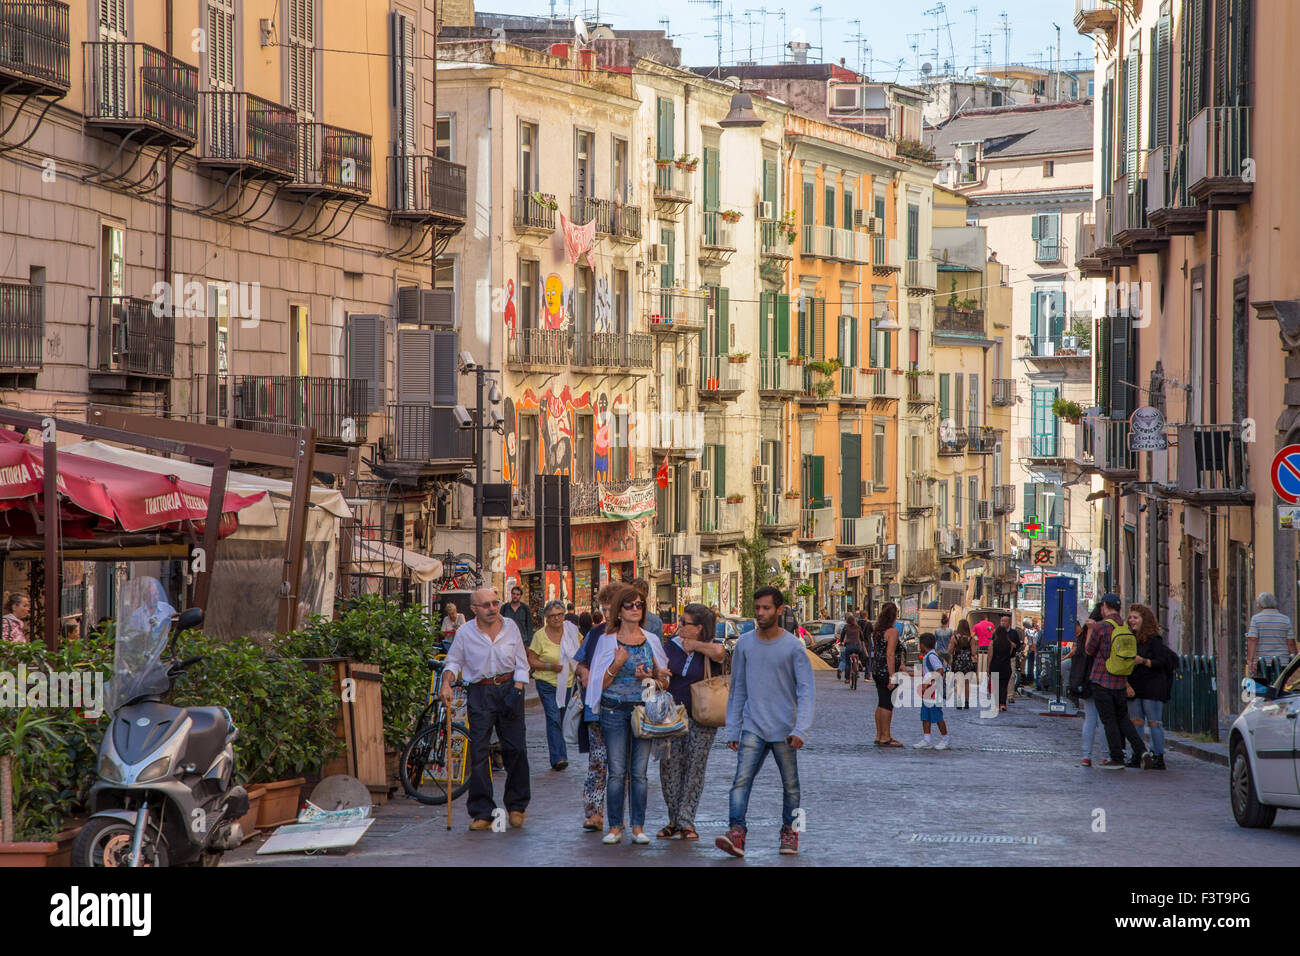 Escena callejera, Nápoles, Italia Foto de stock